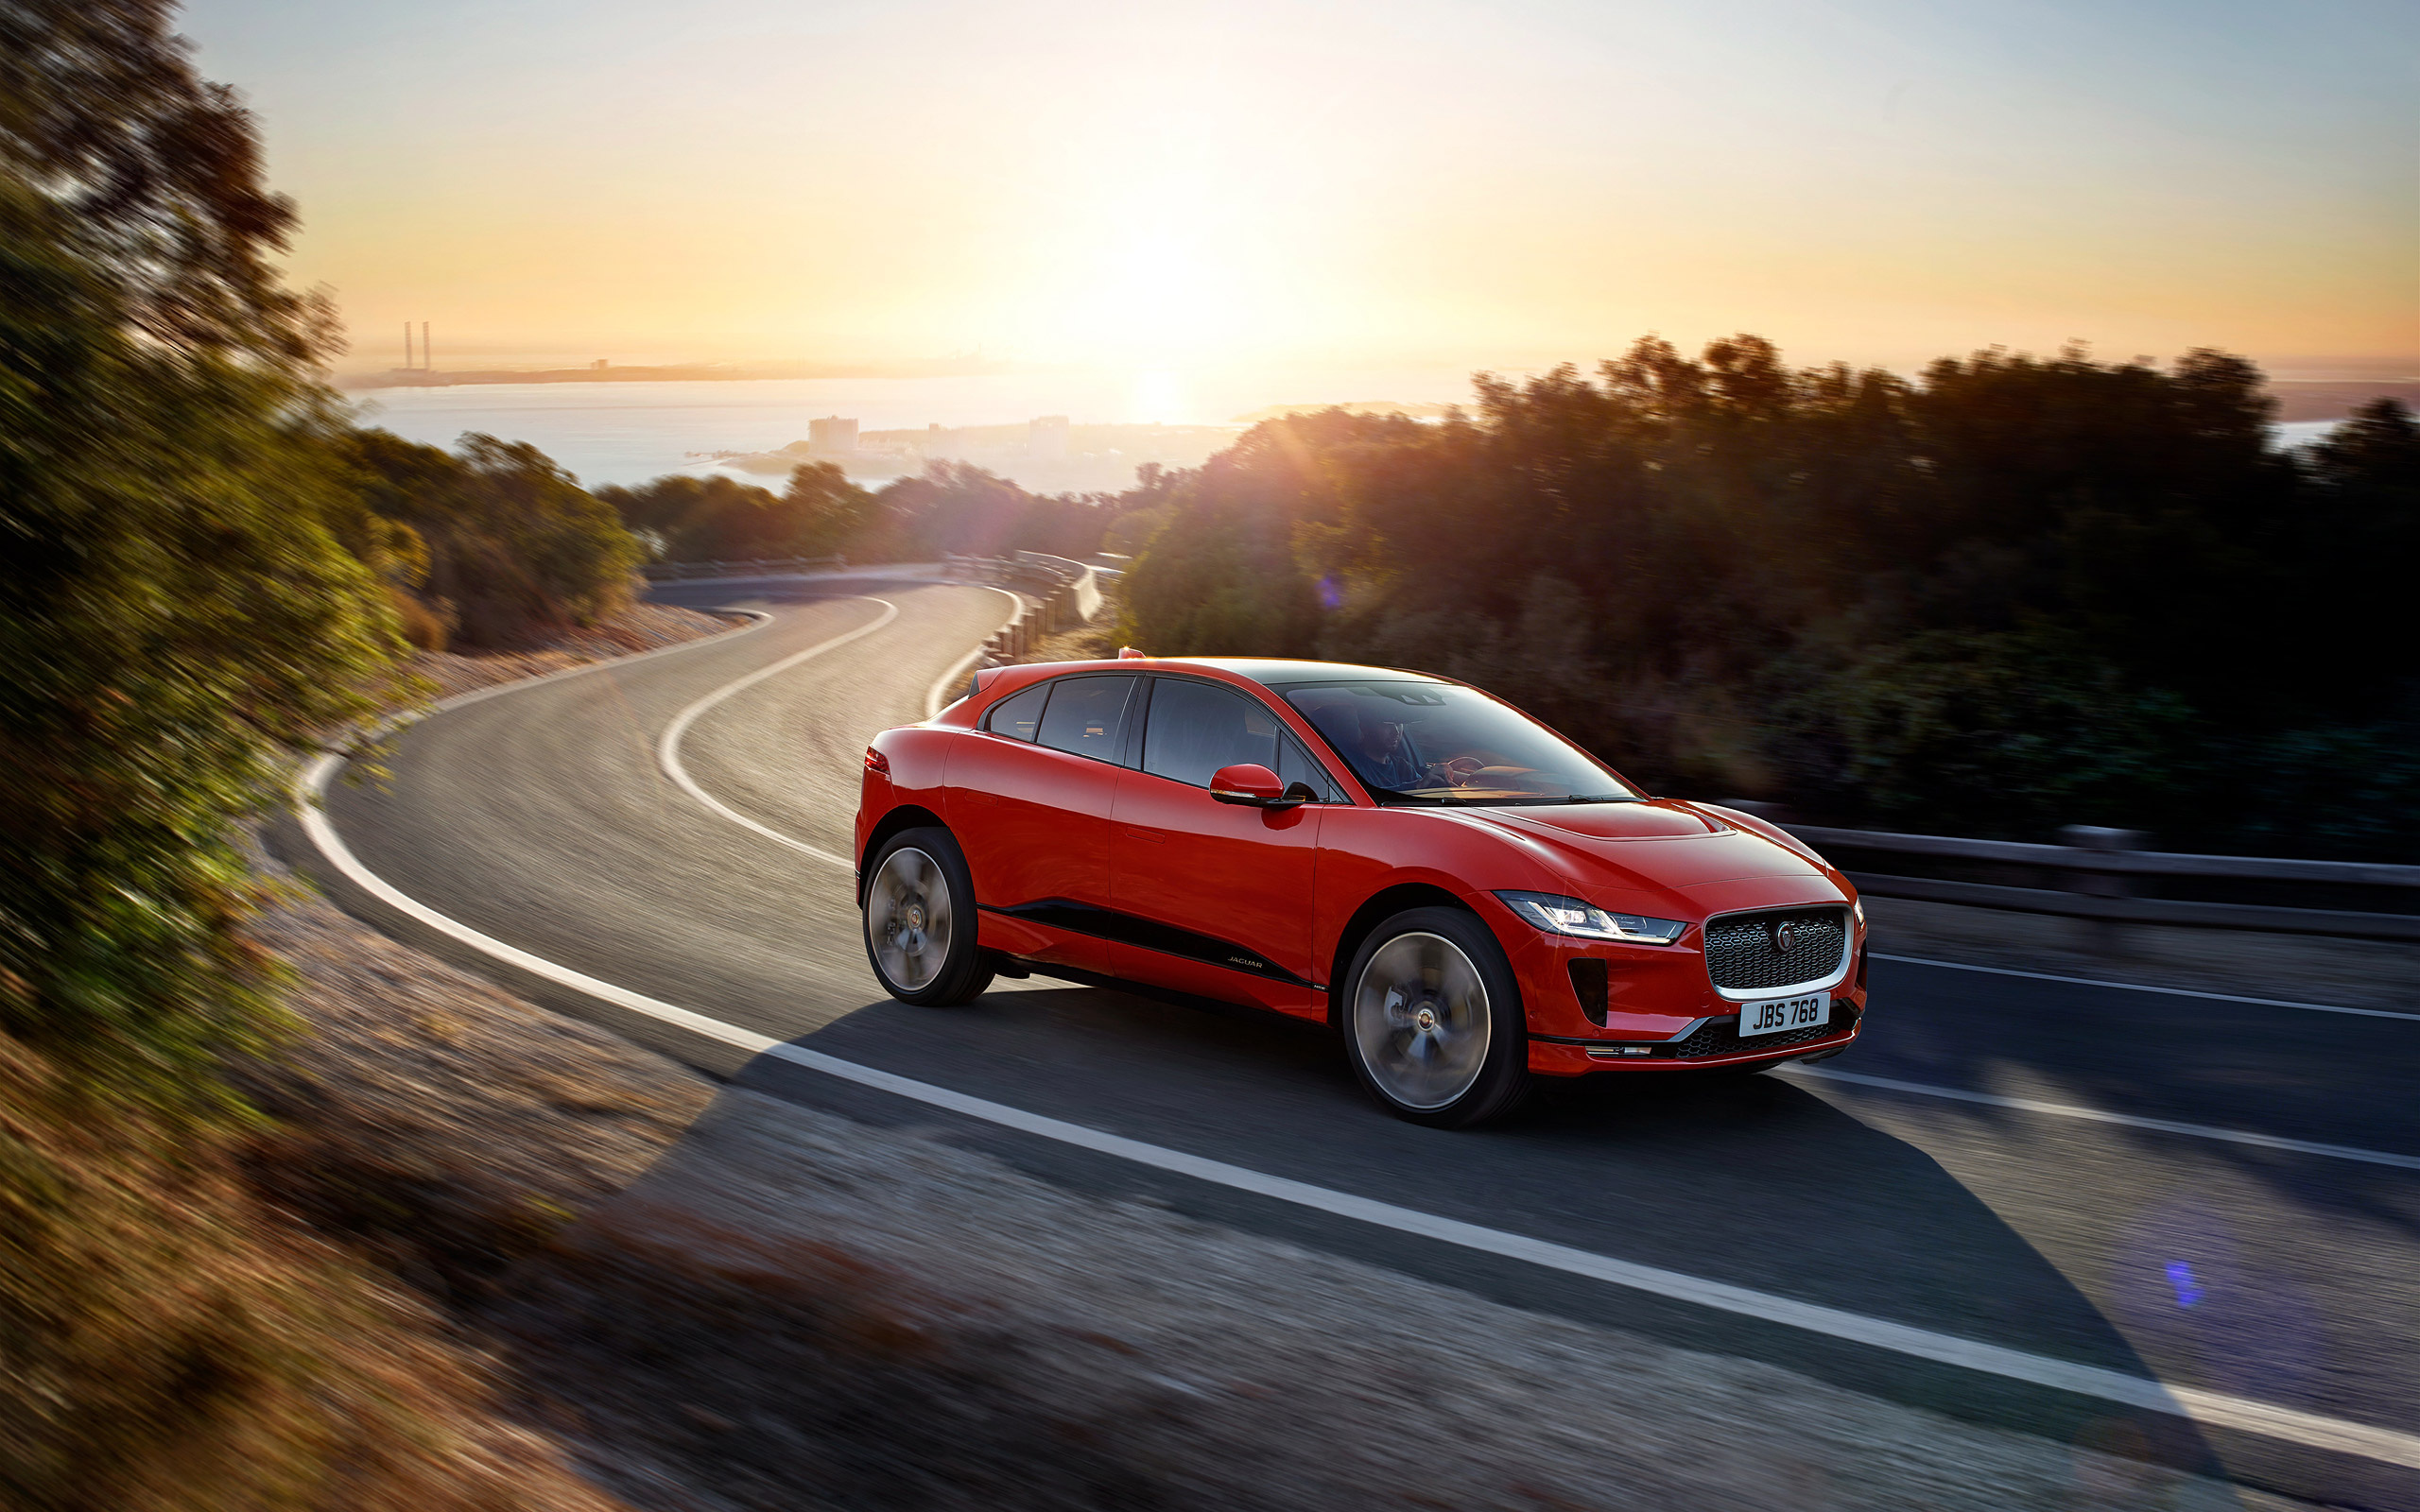 Jaguar I-PACE, Striking red exterior, Elegant design, Breathtaking sunset backdrop, 2560x1600 HD Desktop